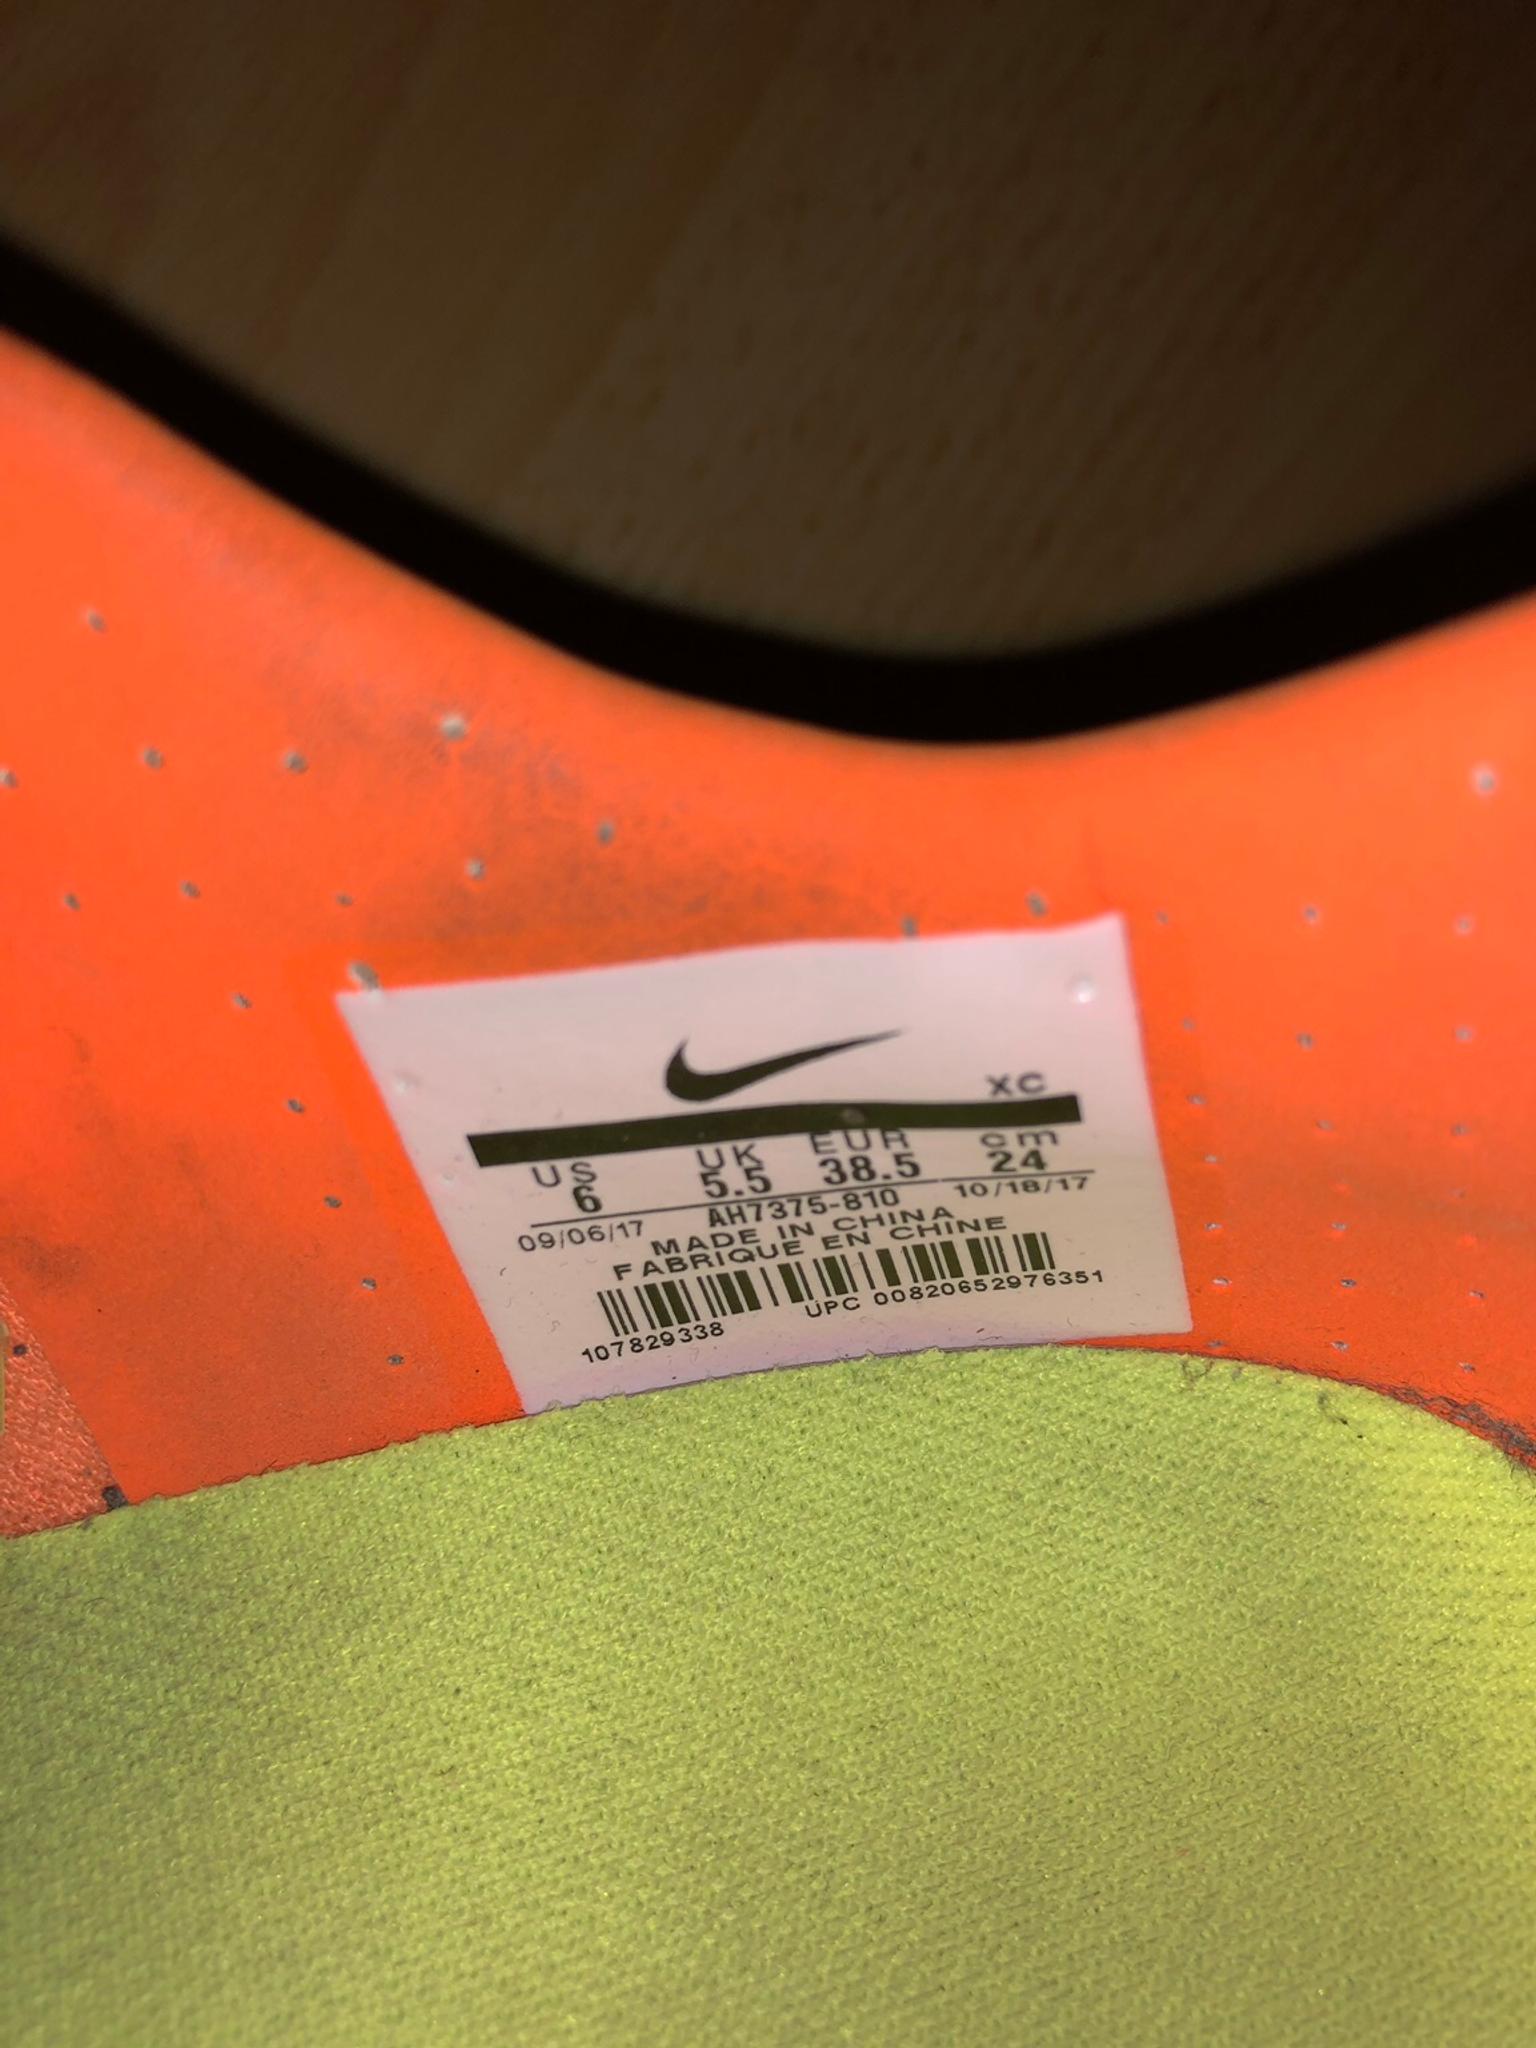 Fussballschuhe Nike Ag Xii Njr Vapor Elite Mercurial Herren